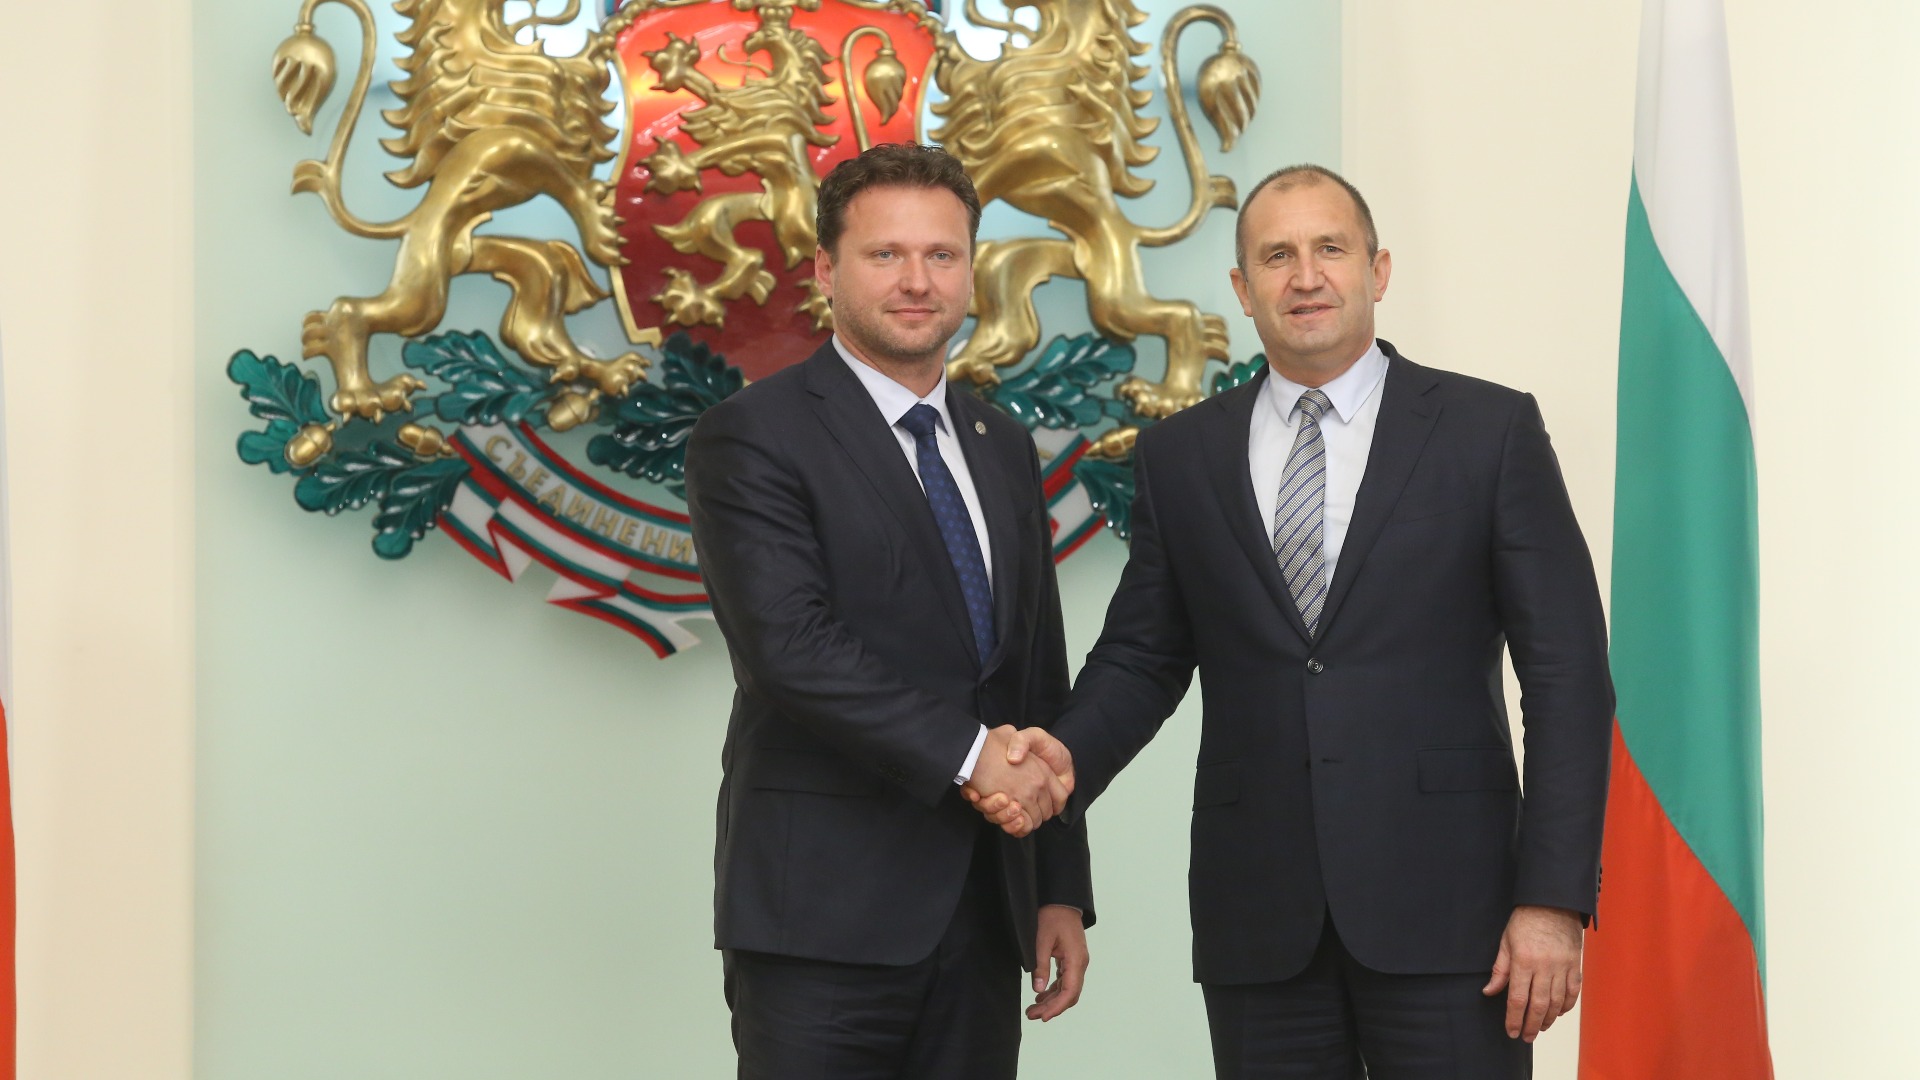 България и Чешката република споделят редица общи позиции по ключови